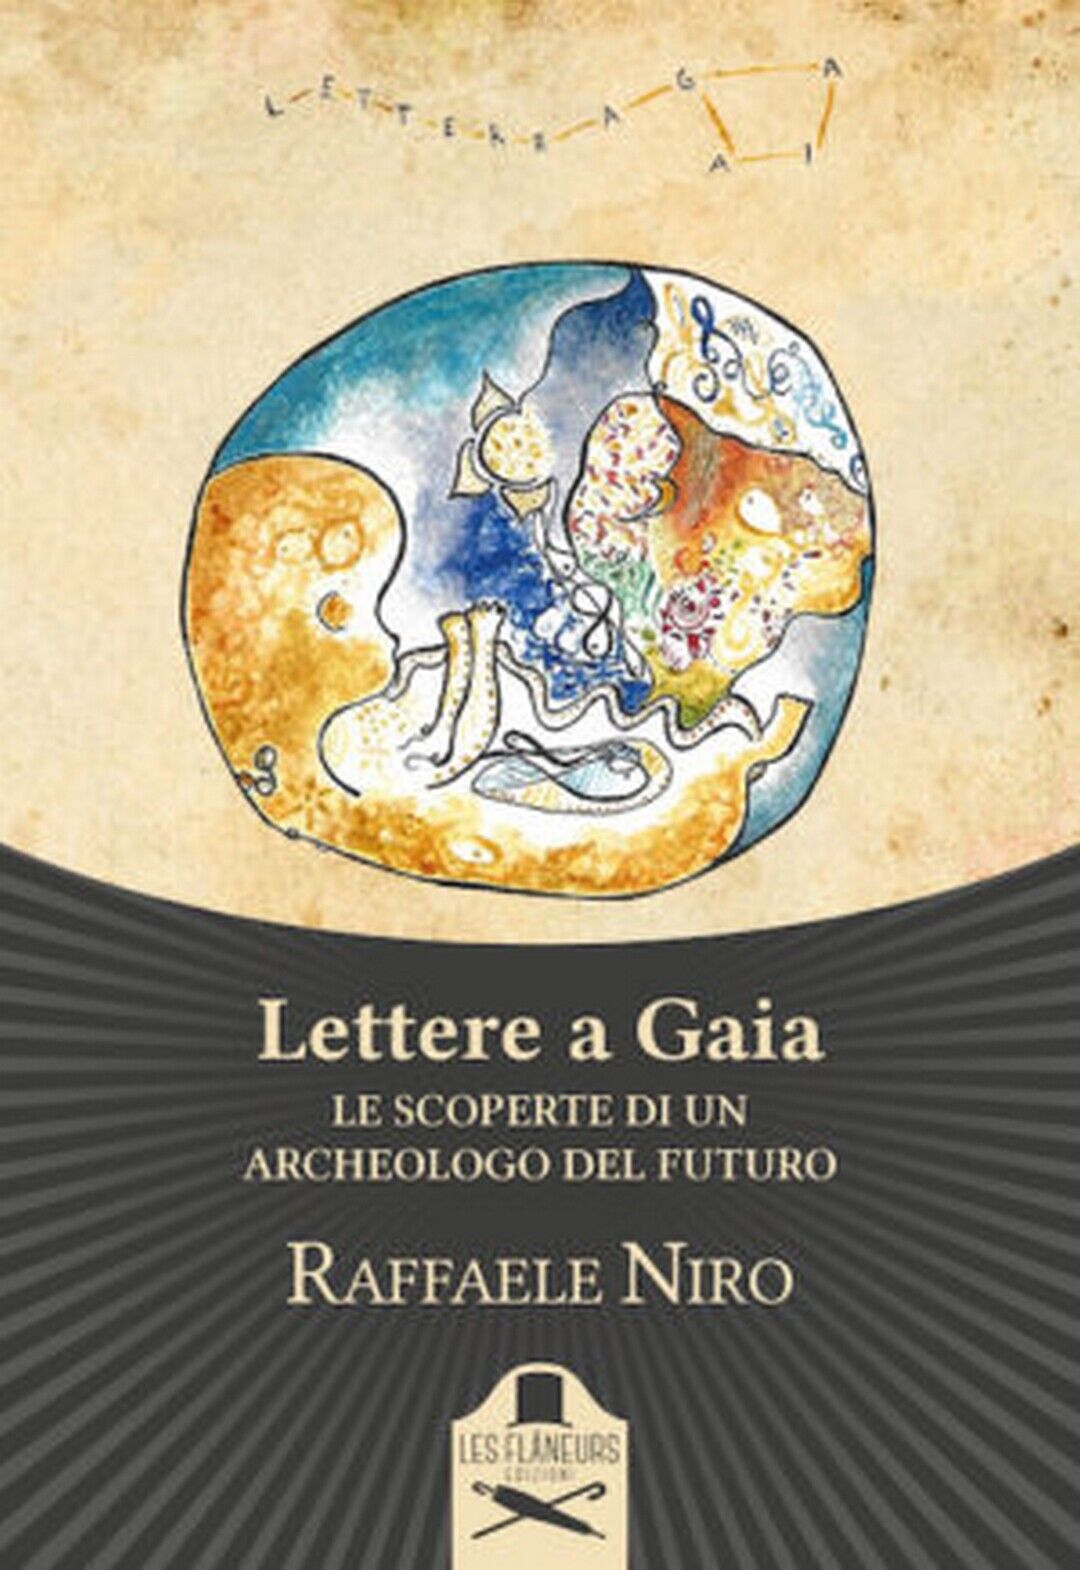 Lettere a Gaia  di Raffaele Niro ,  Flaneurs libro usato